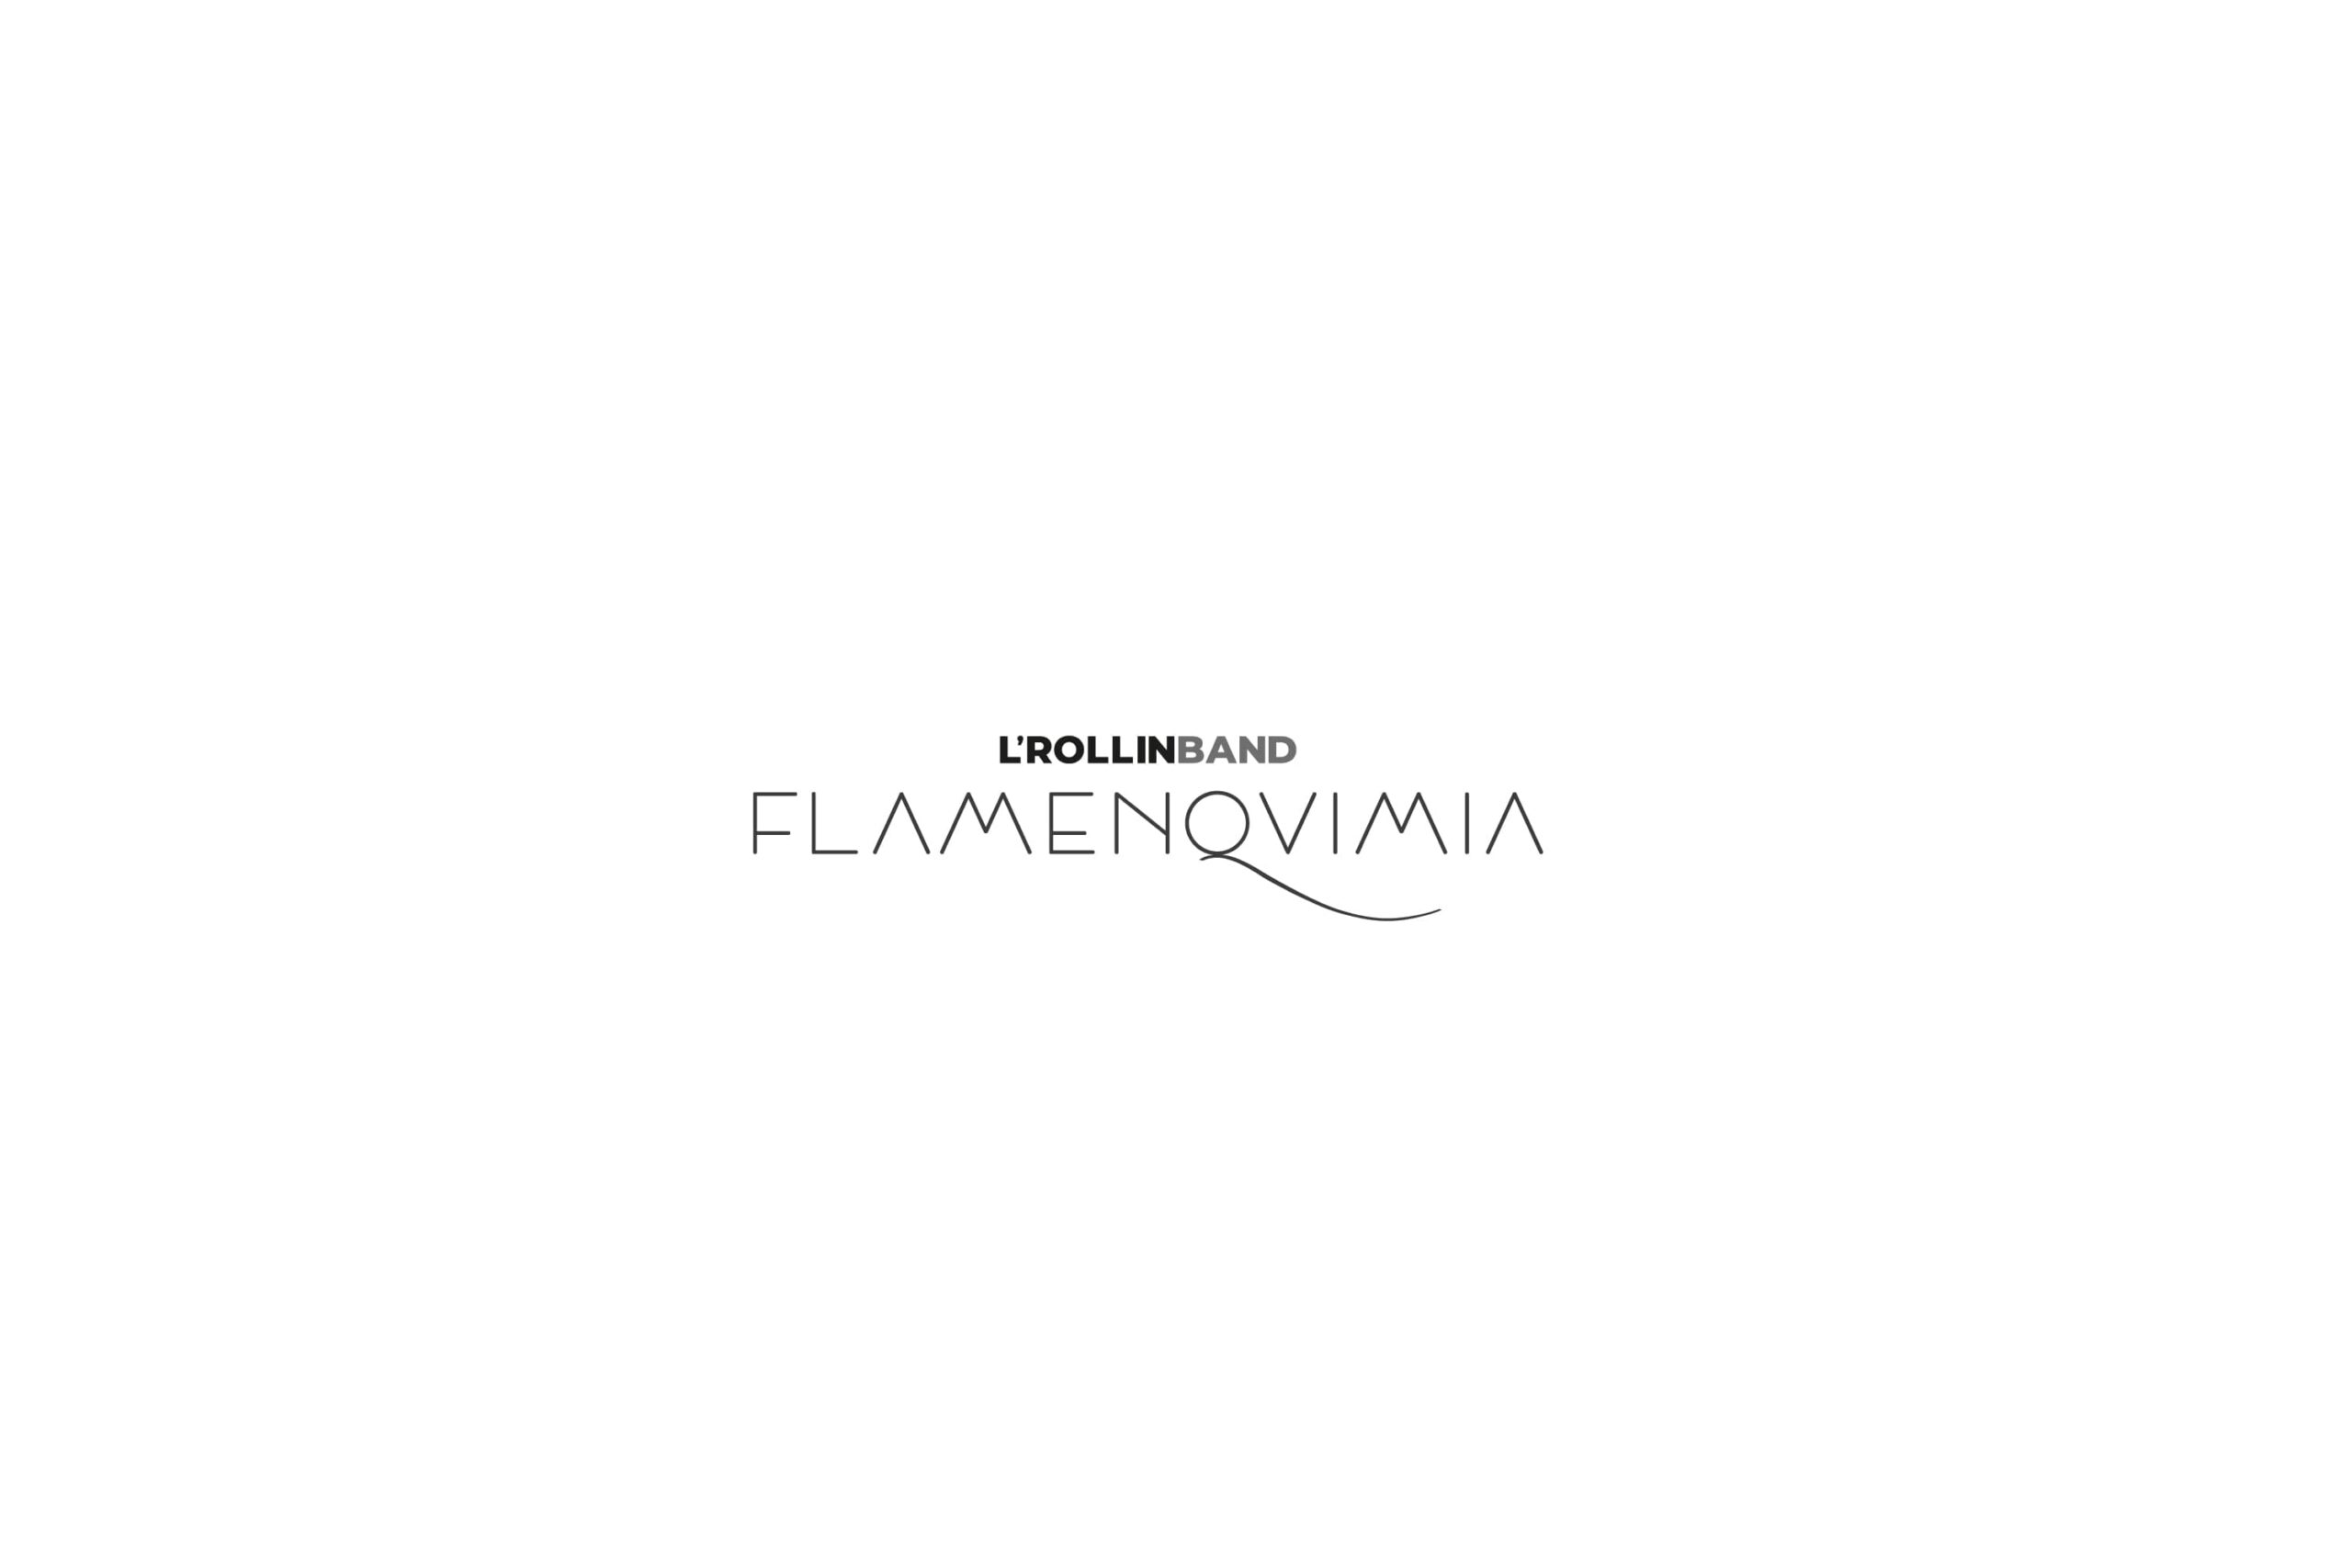 Logotipo negro Flamenquimia LRollin Band sobre fondo blanco branding por The Acctitude diseño web